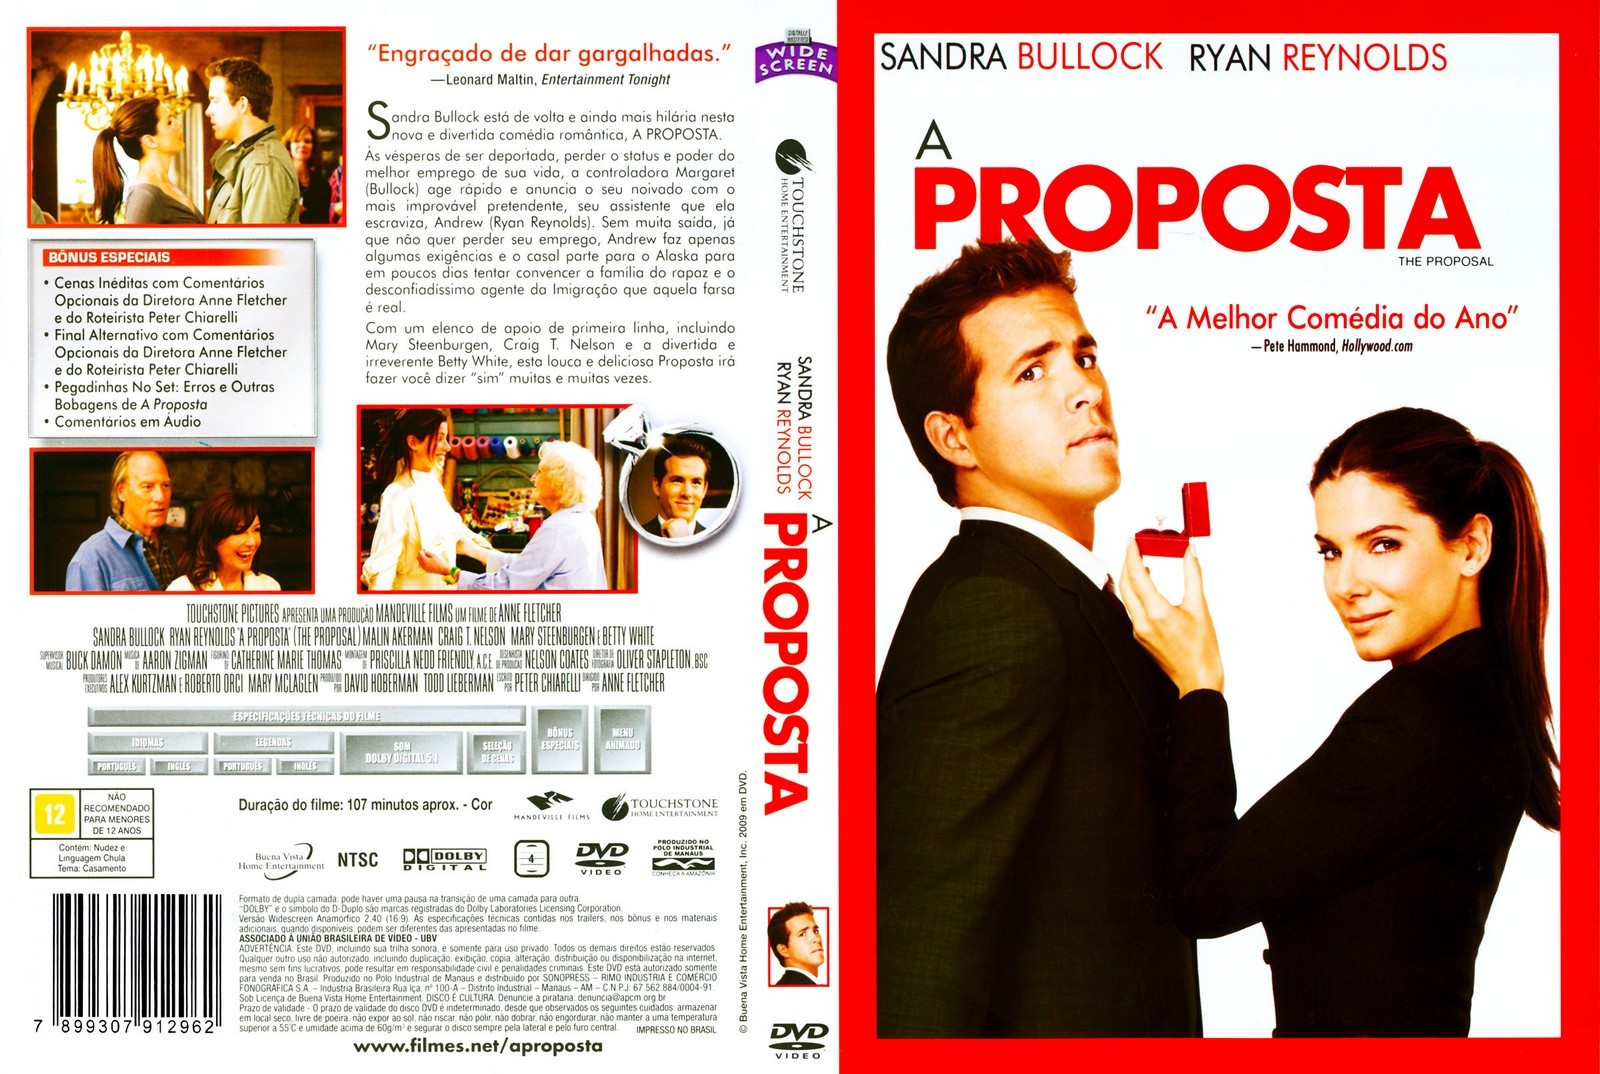 Gatomia capa dvd cover: A Proposta1600 x 1074